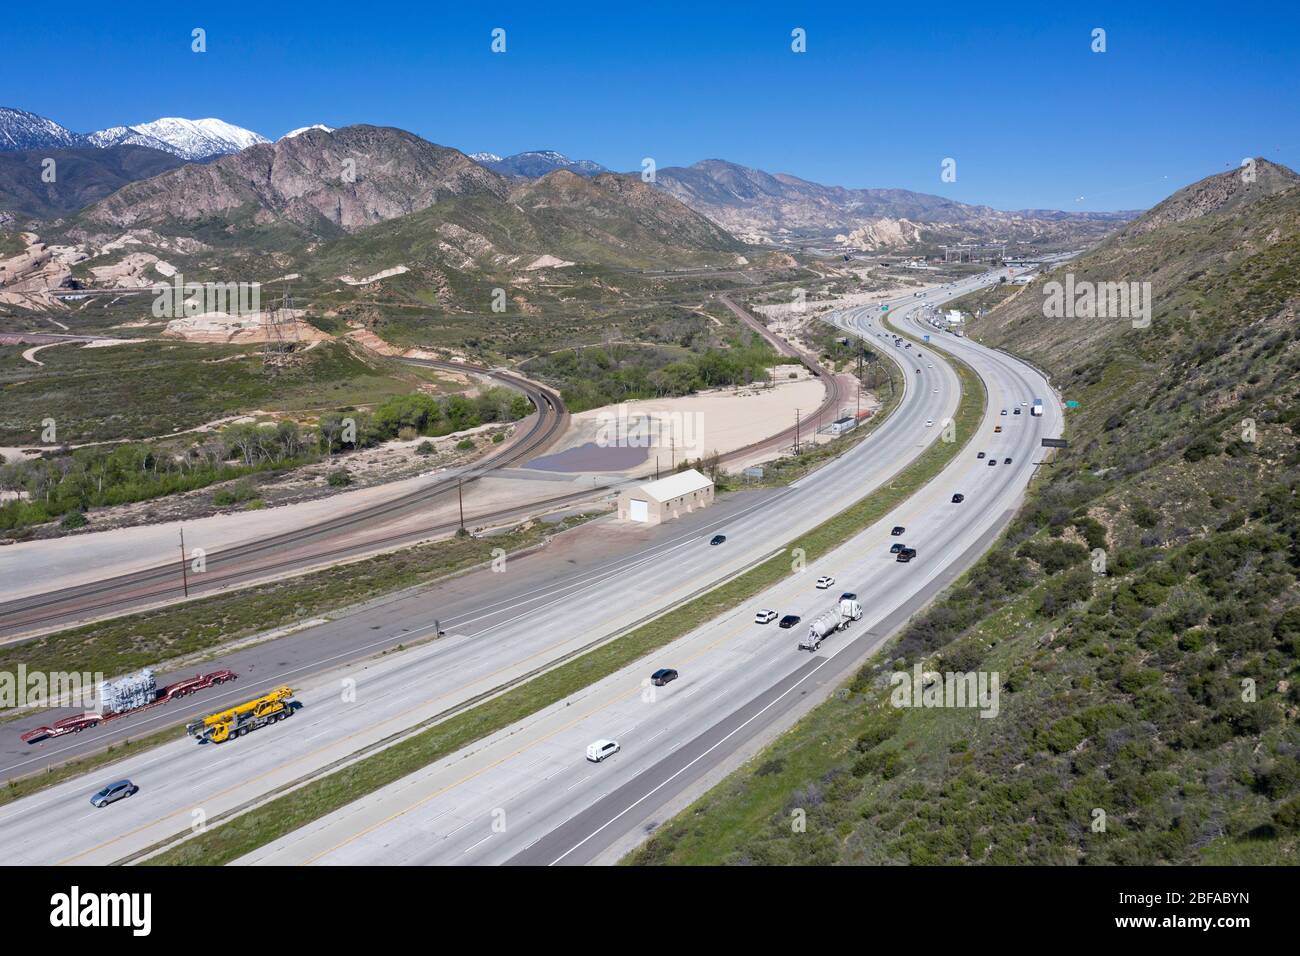 Vista aerea dell'autostrada Interstate 15 (i-15), che sale al Cajon Pass, che collega Los Angeles con il deserto e Las Vegas Foto Stock